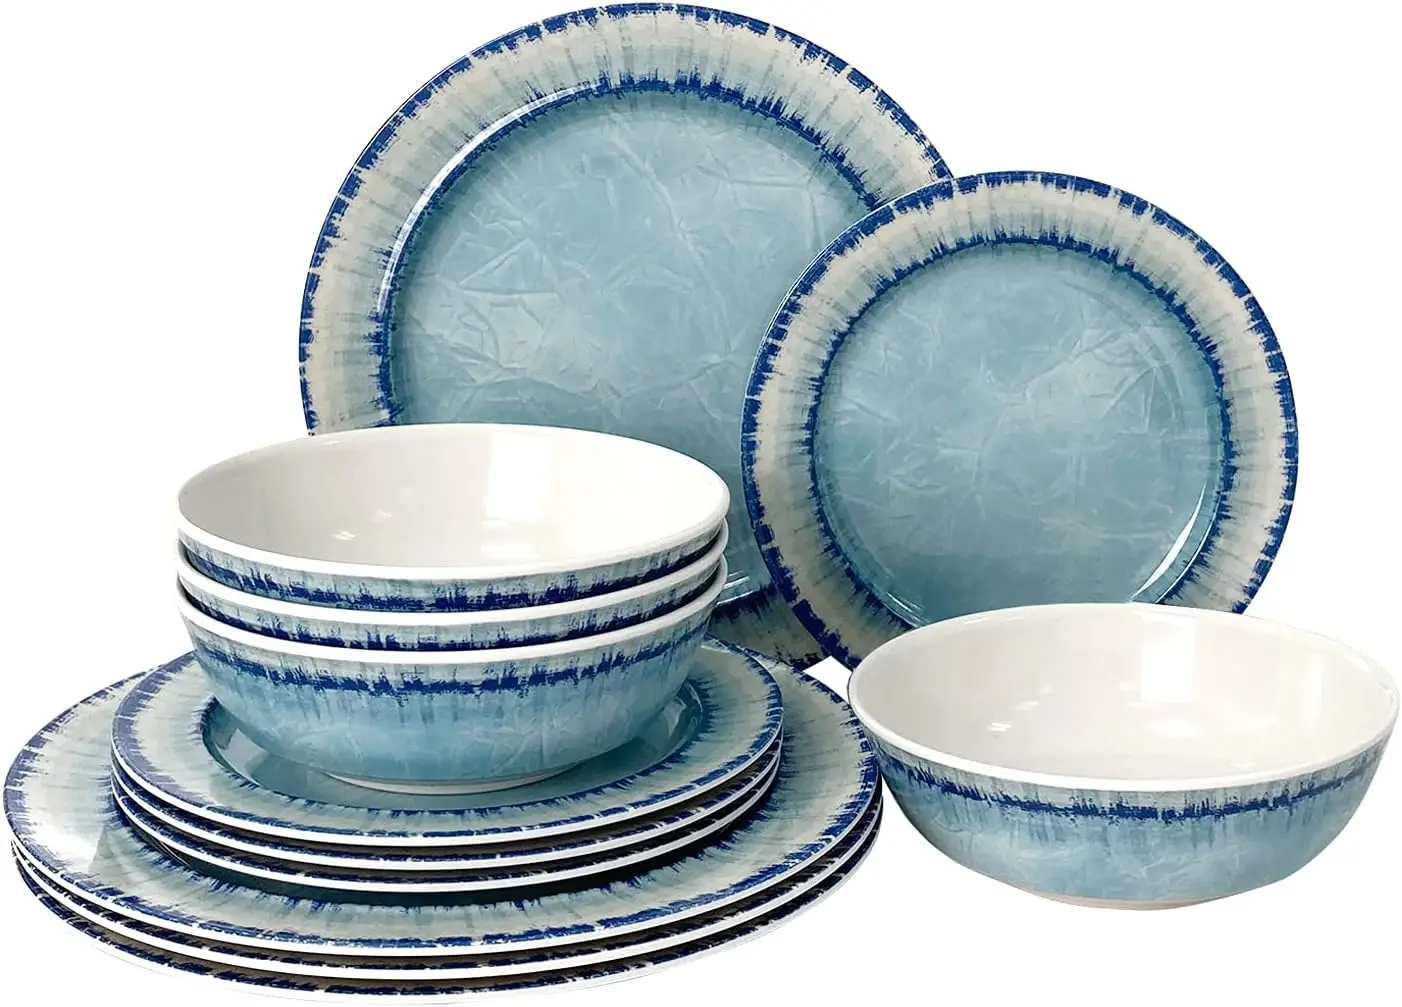 

Набор посуды AELS из меламина, набор из 12 предметов для ужина в помещении и на улице, можно мыть в посудомоечной машине, легкий, Небьющийся